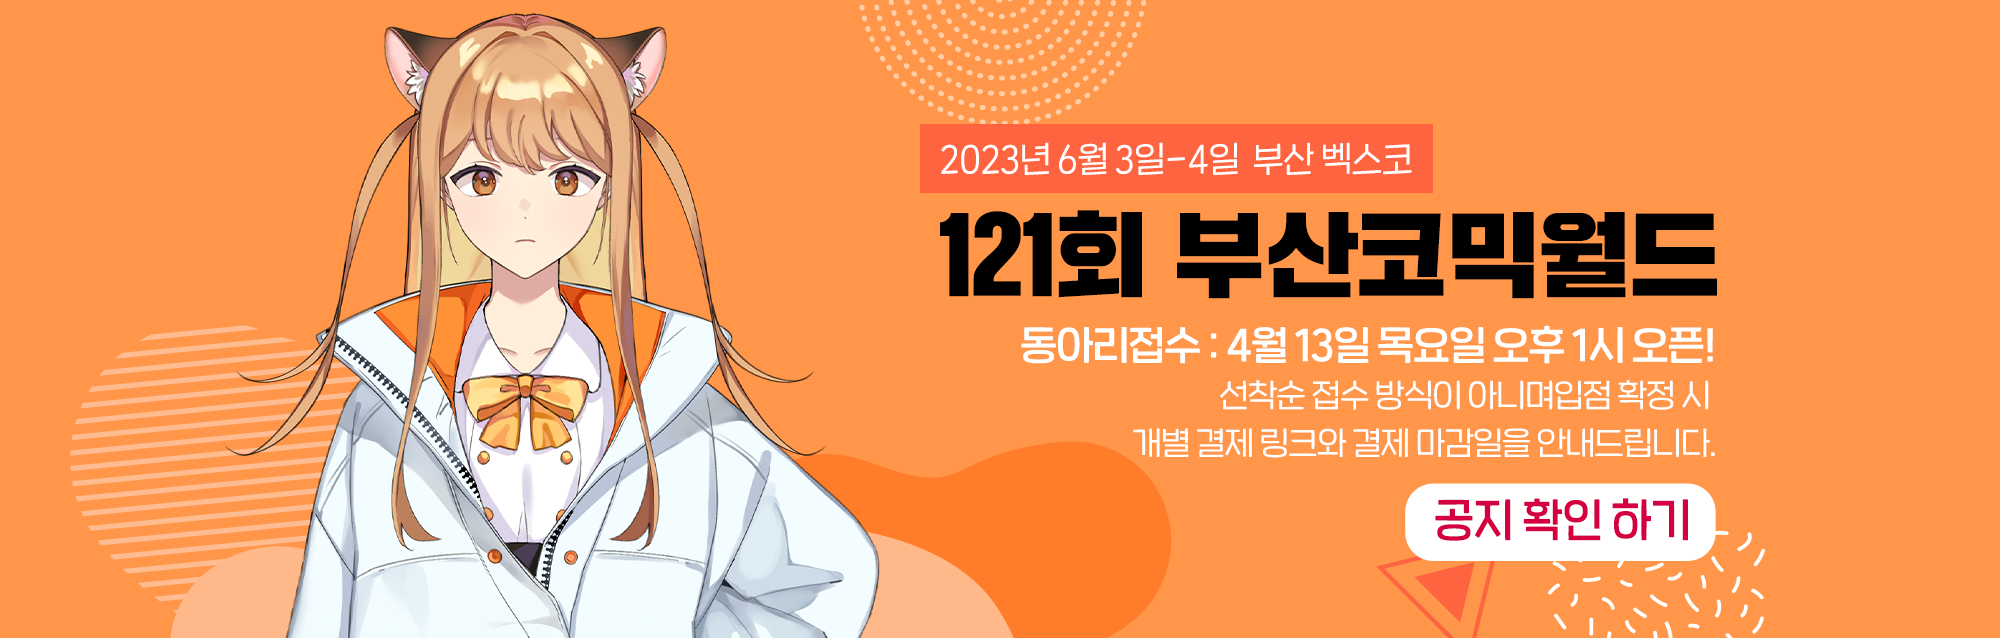 121회 부산코믹월드 동아리신청